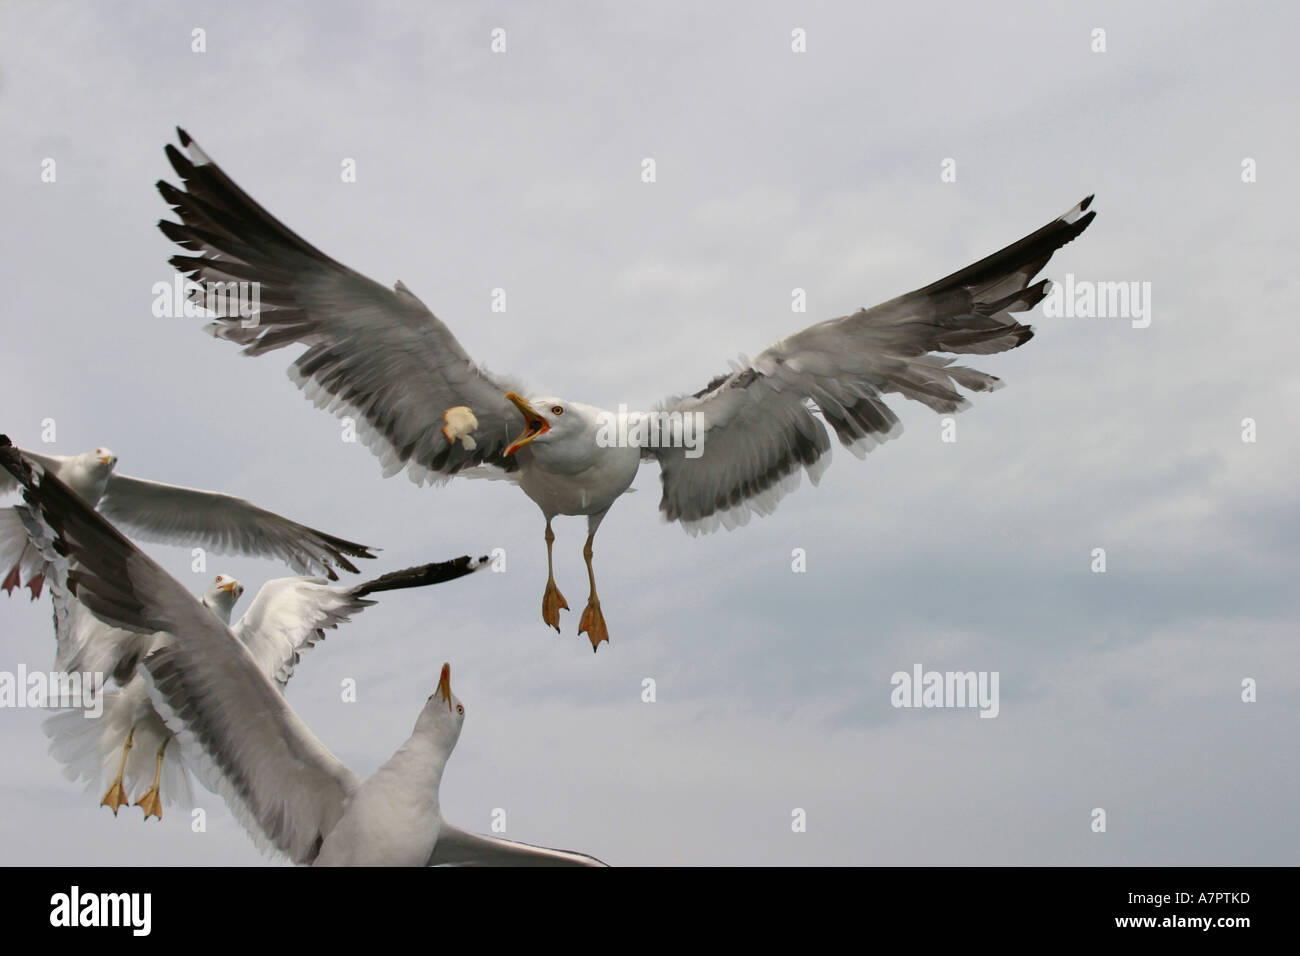 Goéland argenté (Larus argentatus), voler, se cassant à l'alimentation, Pays-Bas, Texel Banque D'Images